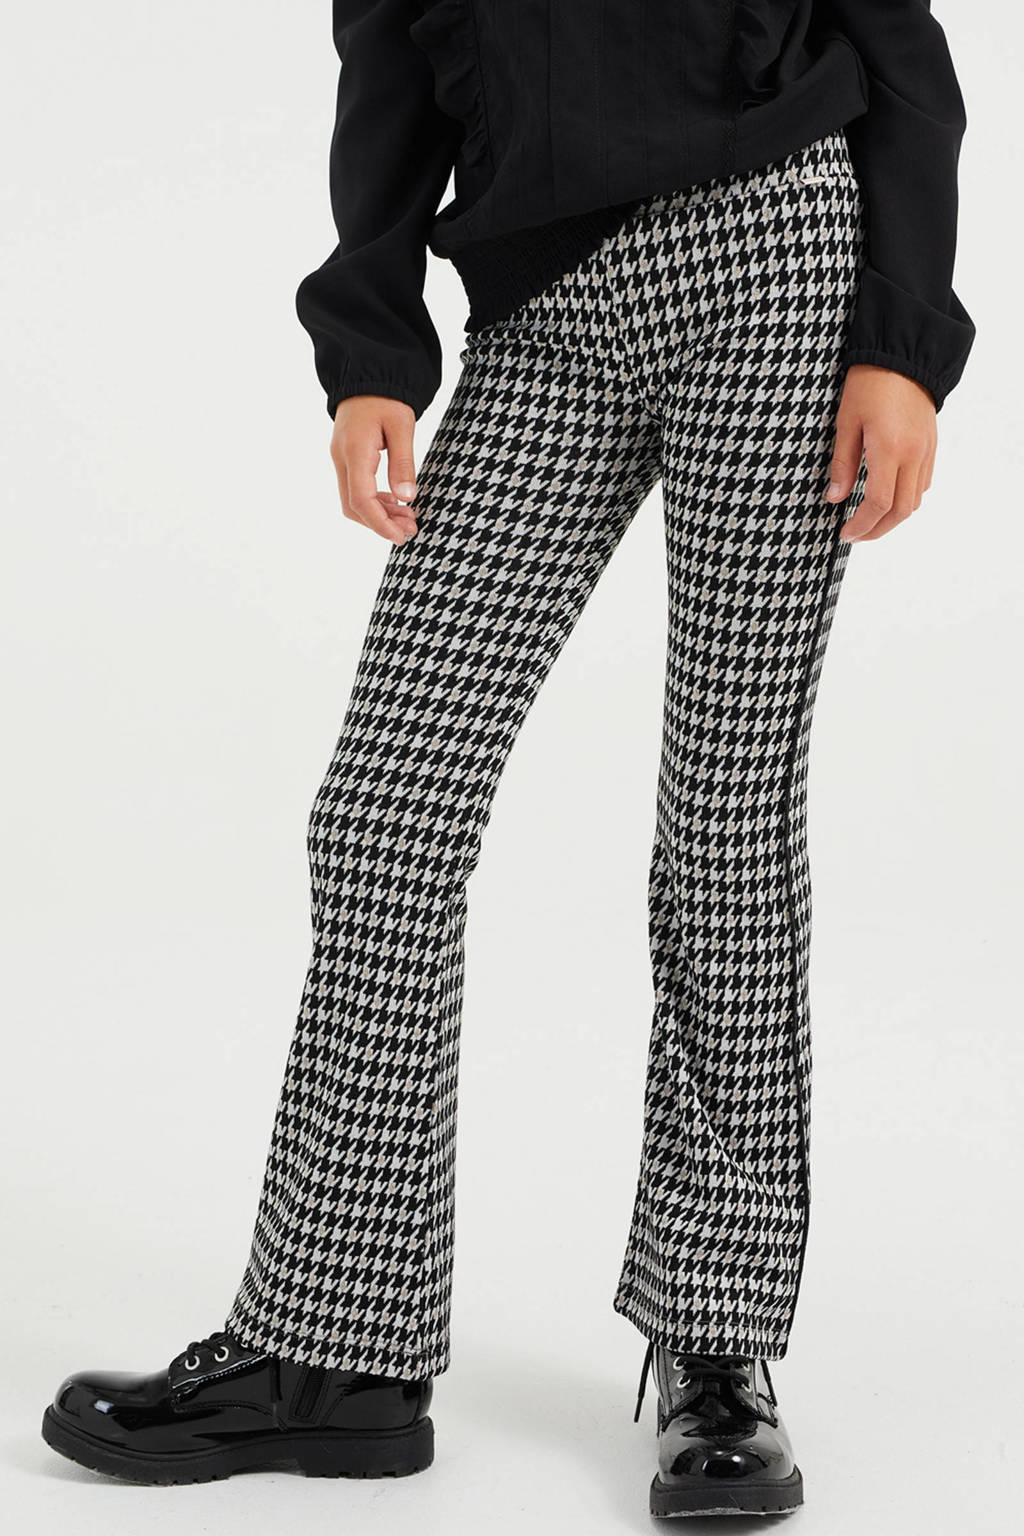 WE Fashion flared broek met pied-de-poule zwart/grijs, Zwart/grijs